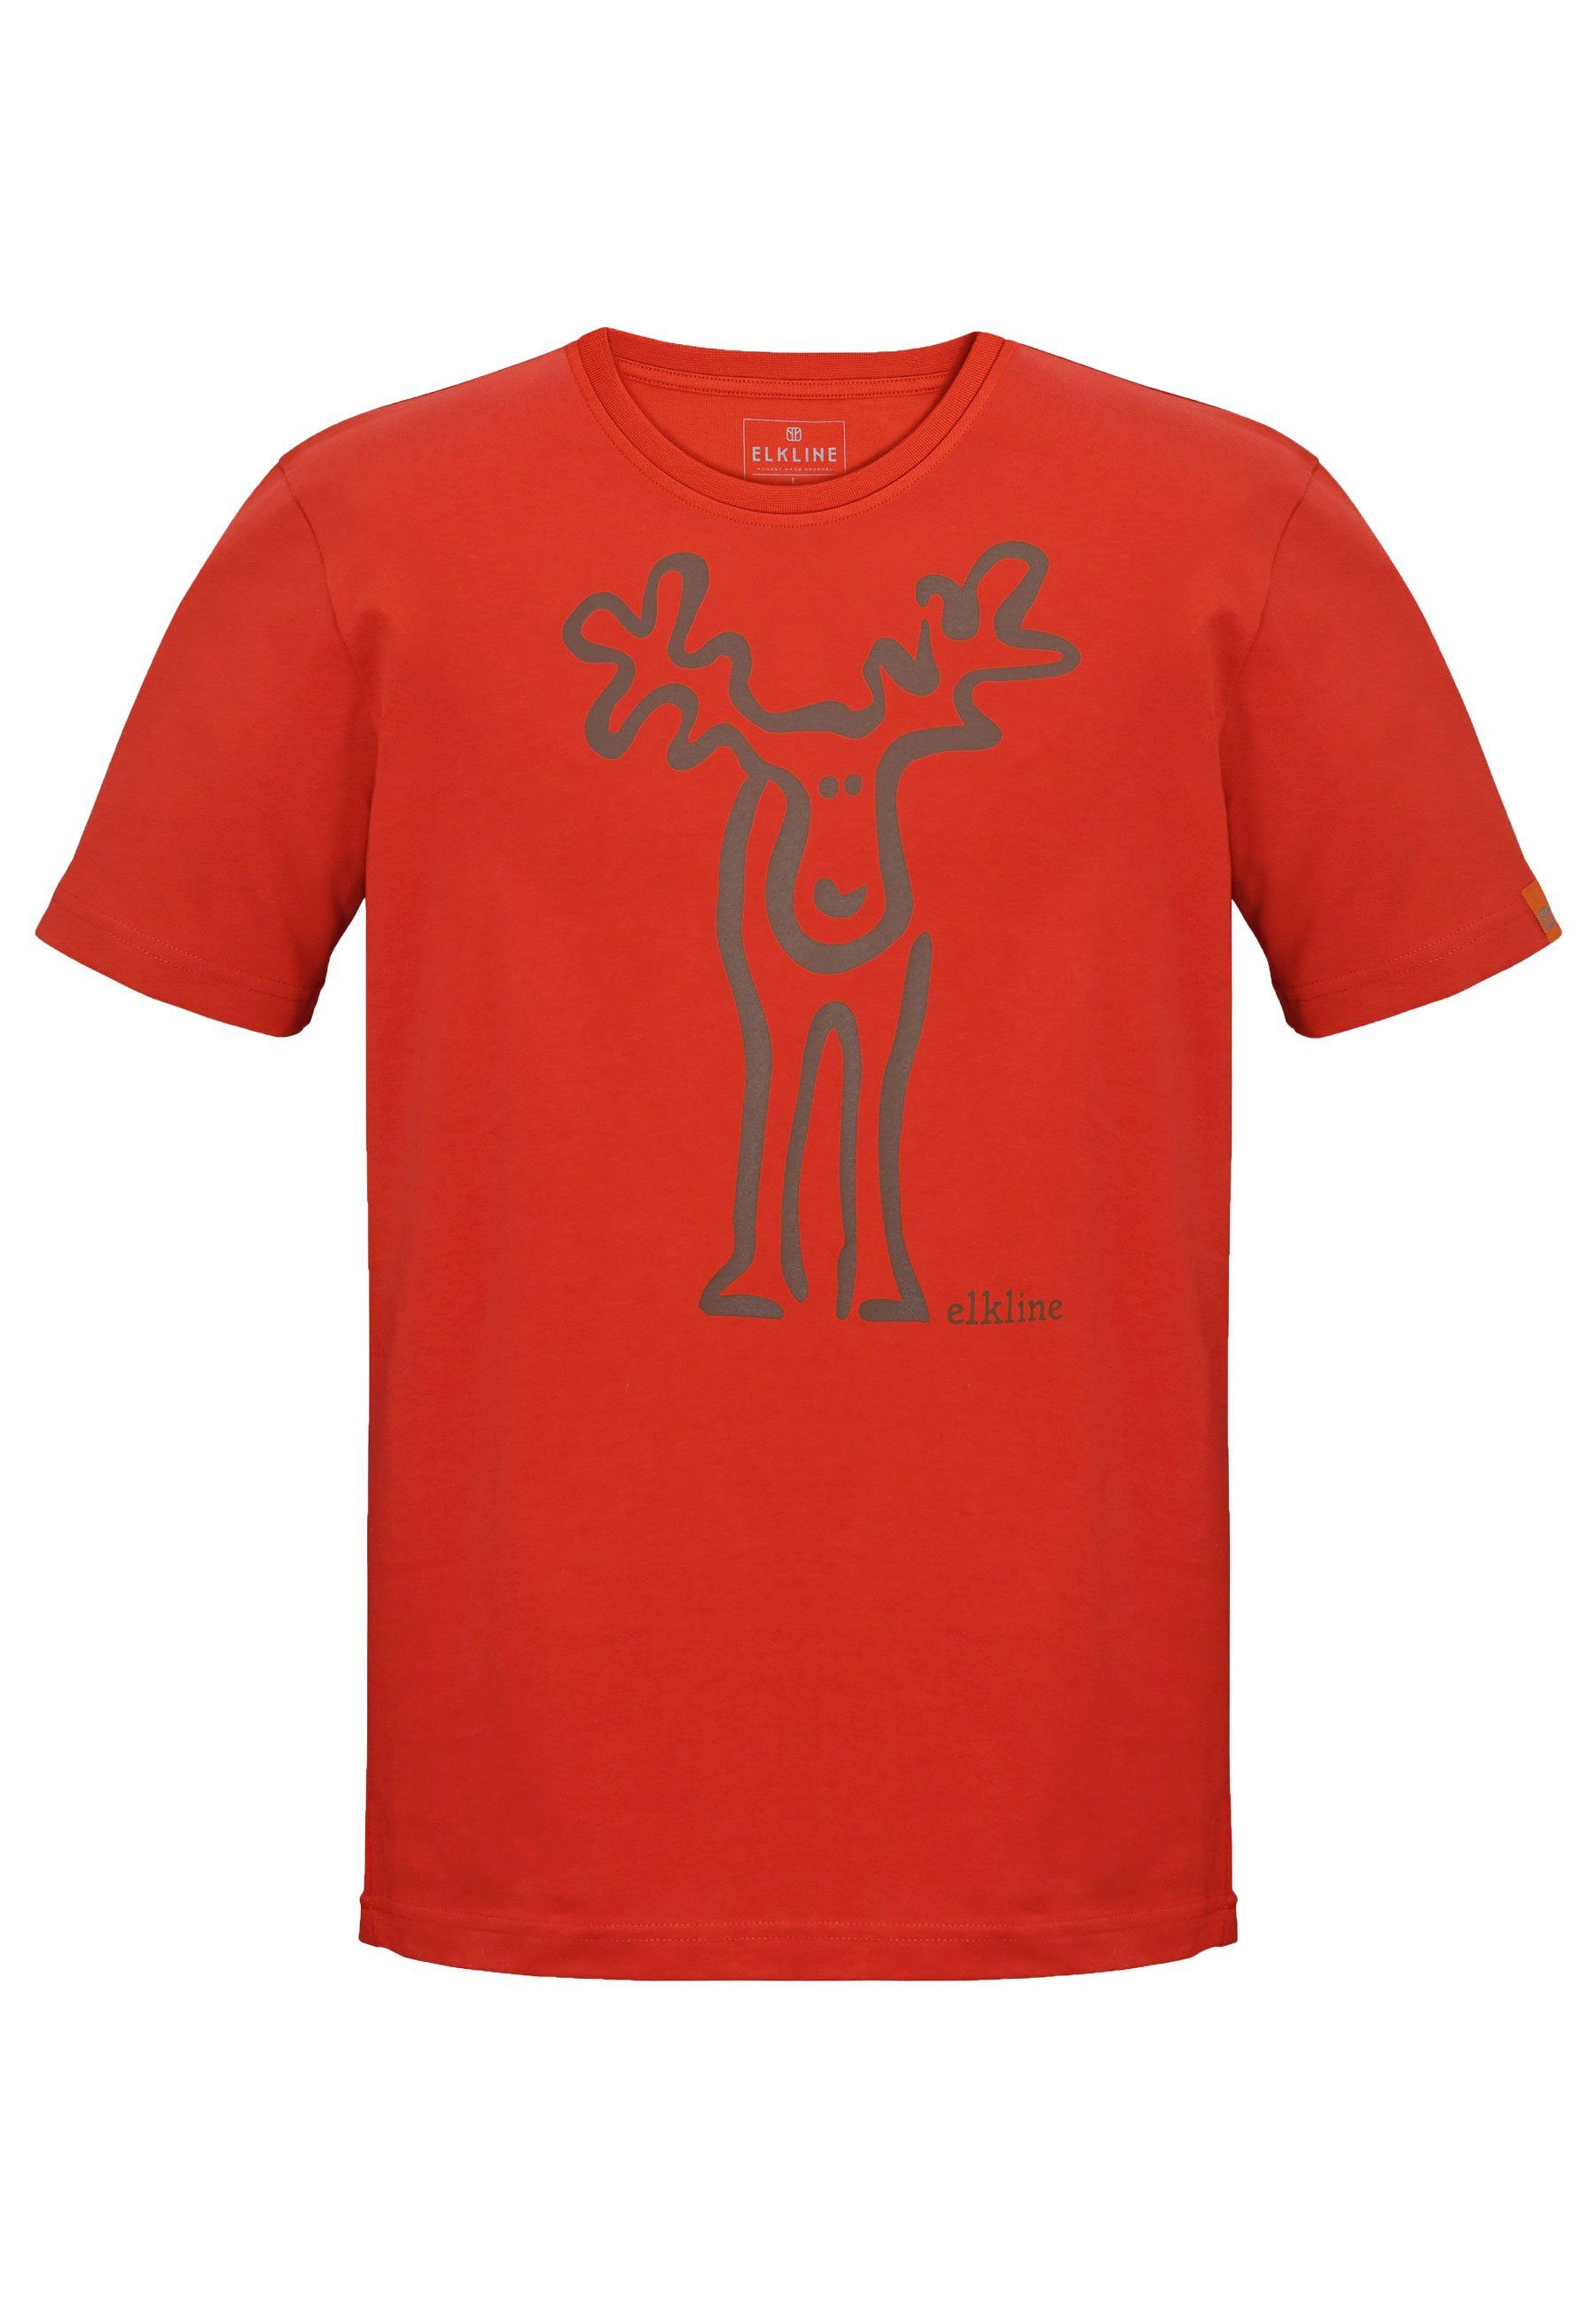 Elkline T-Shirt Rudolf Retro Elch Brust und Rücken Print mandarin - darkbrown